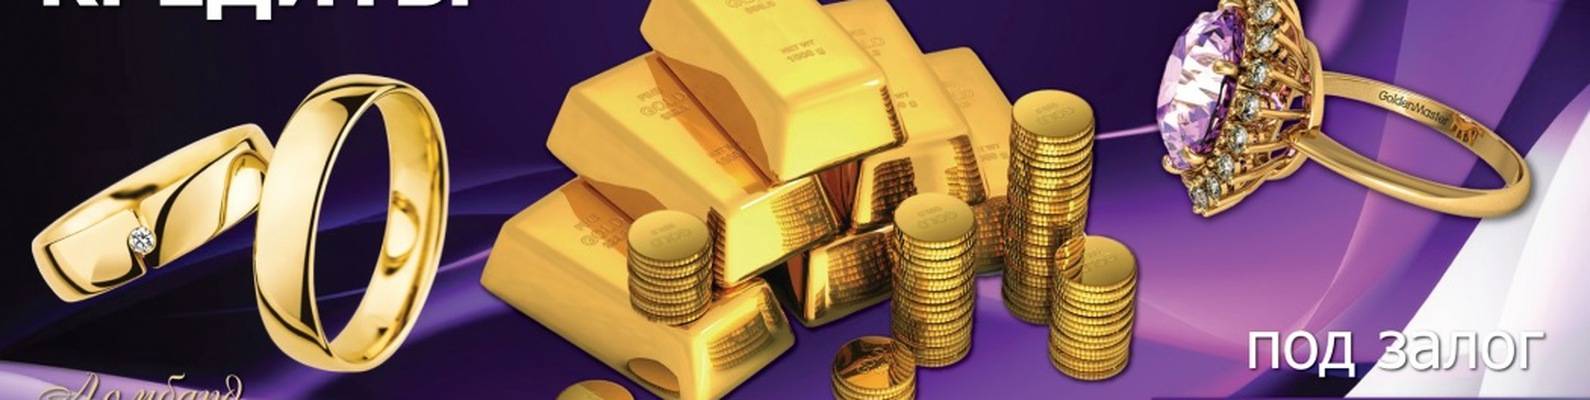 Кредит под залог золота: берем заем в ломбарде